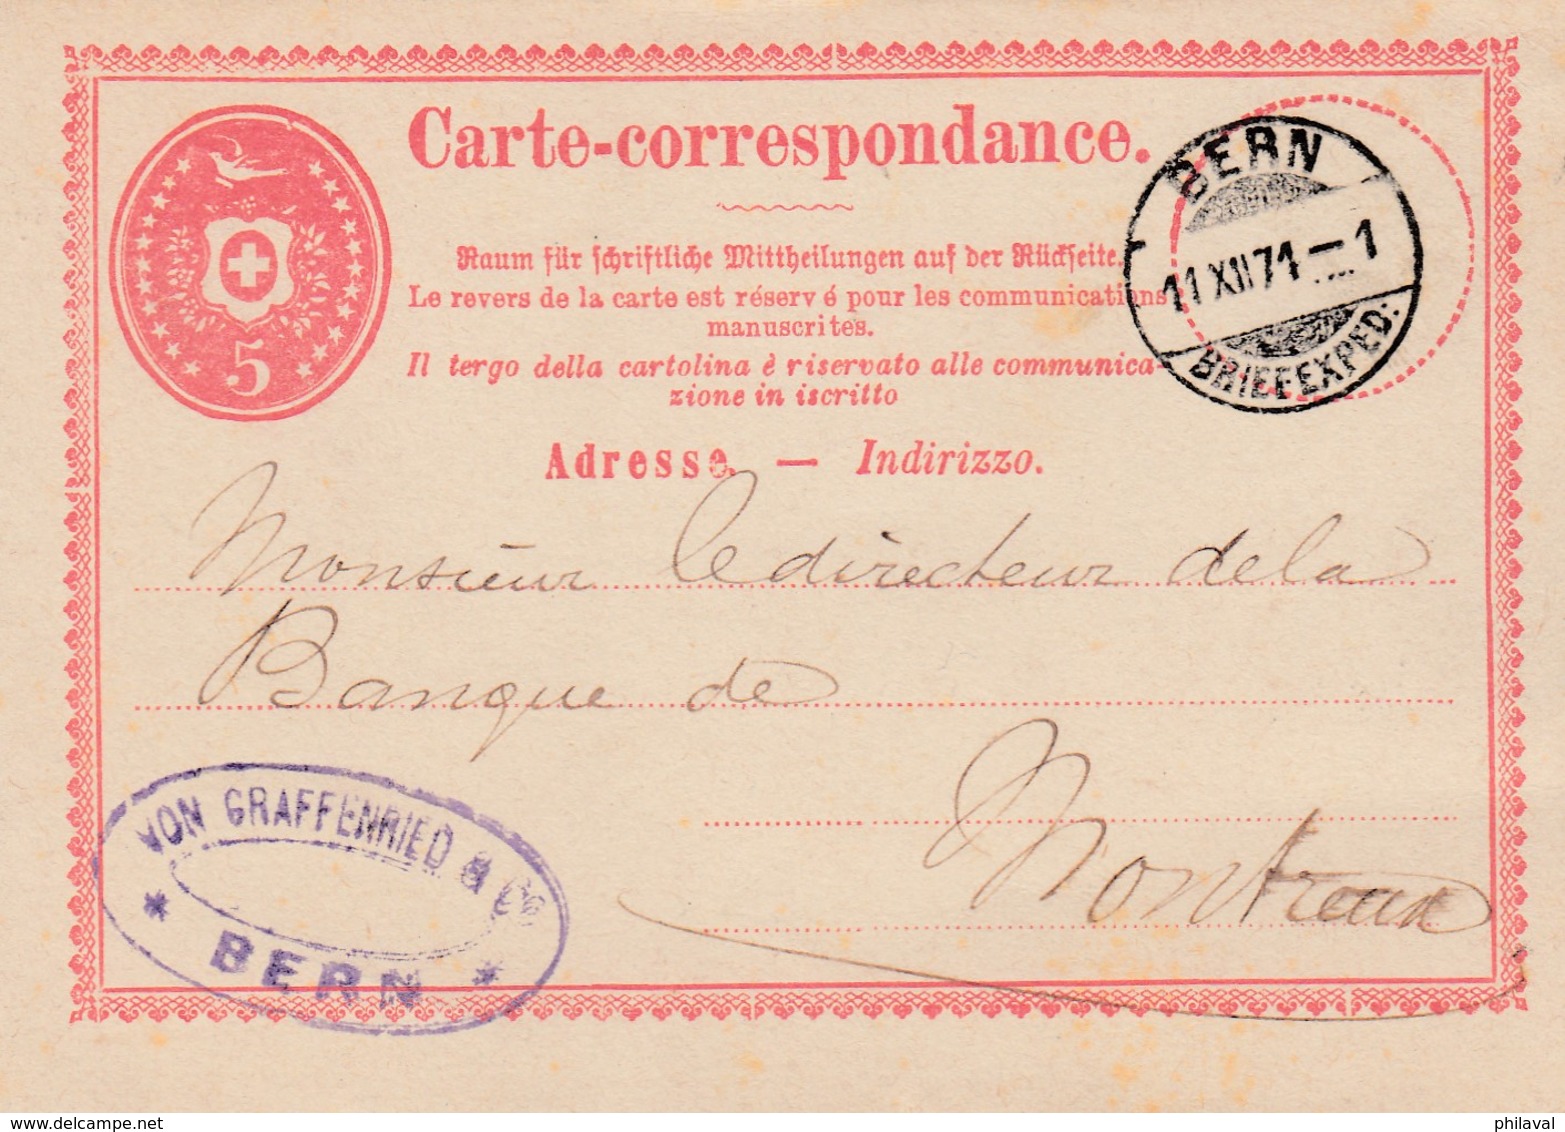 Carte Corespondance De La Firme Von Graffenried, Bern,  Obl Le 11.XII.1871, à Dest Du Directeur De La Banque De Montreux - Entiers Postaux